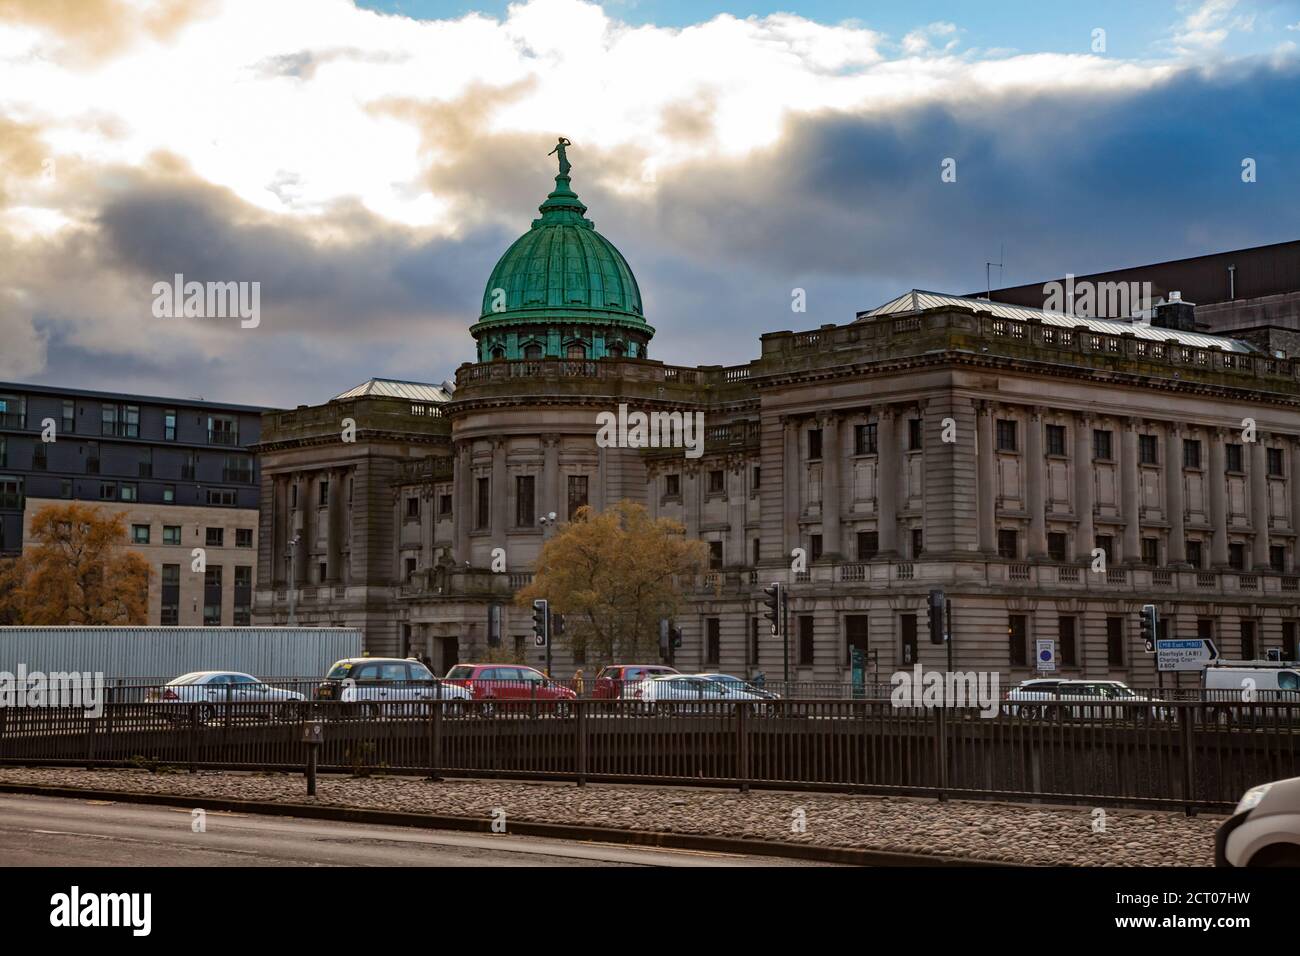 Glasgow / Ecosse - novembre 15 2013 : chute dans la ville. Vue sur le bâtiment de la bibliothèque Mitchell. Ciel bleu avec nuages. Banque D'Images